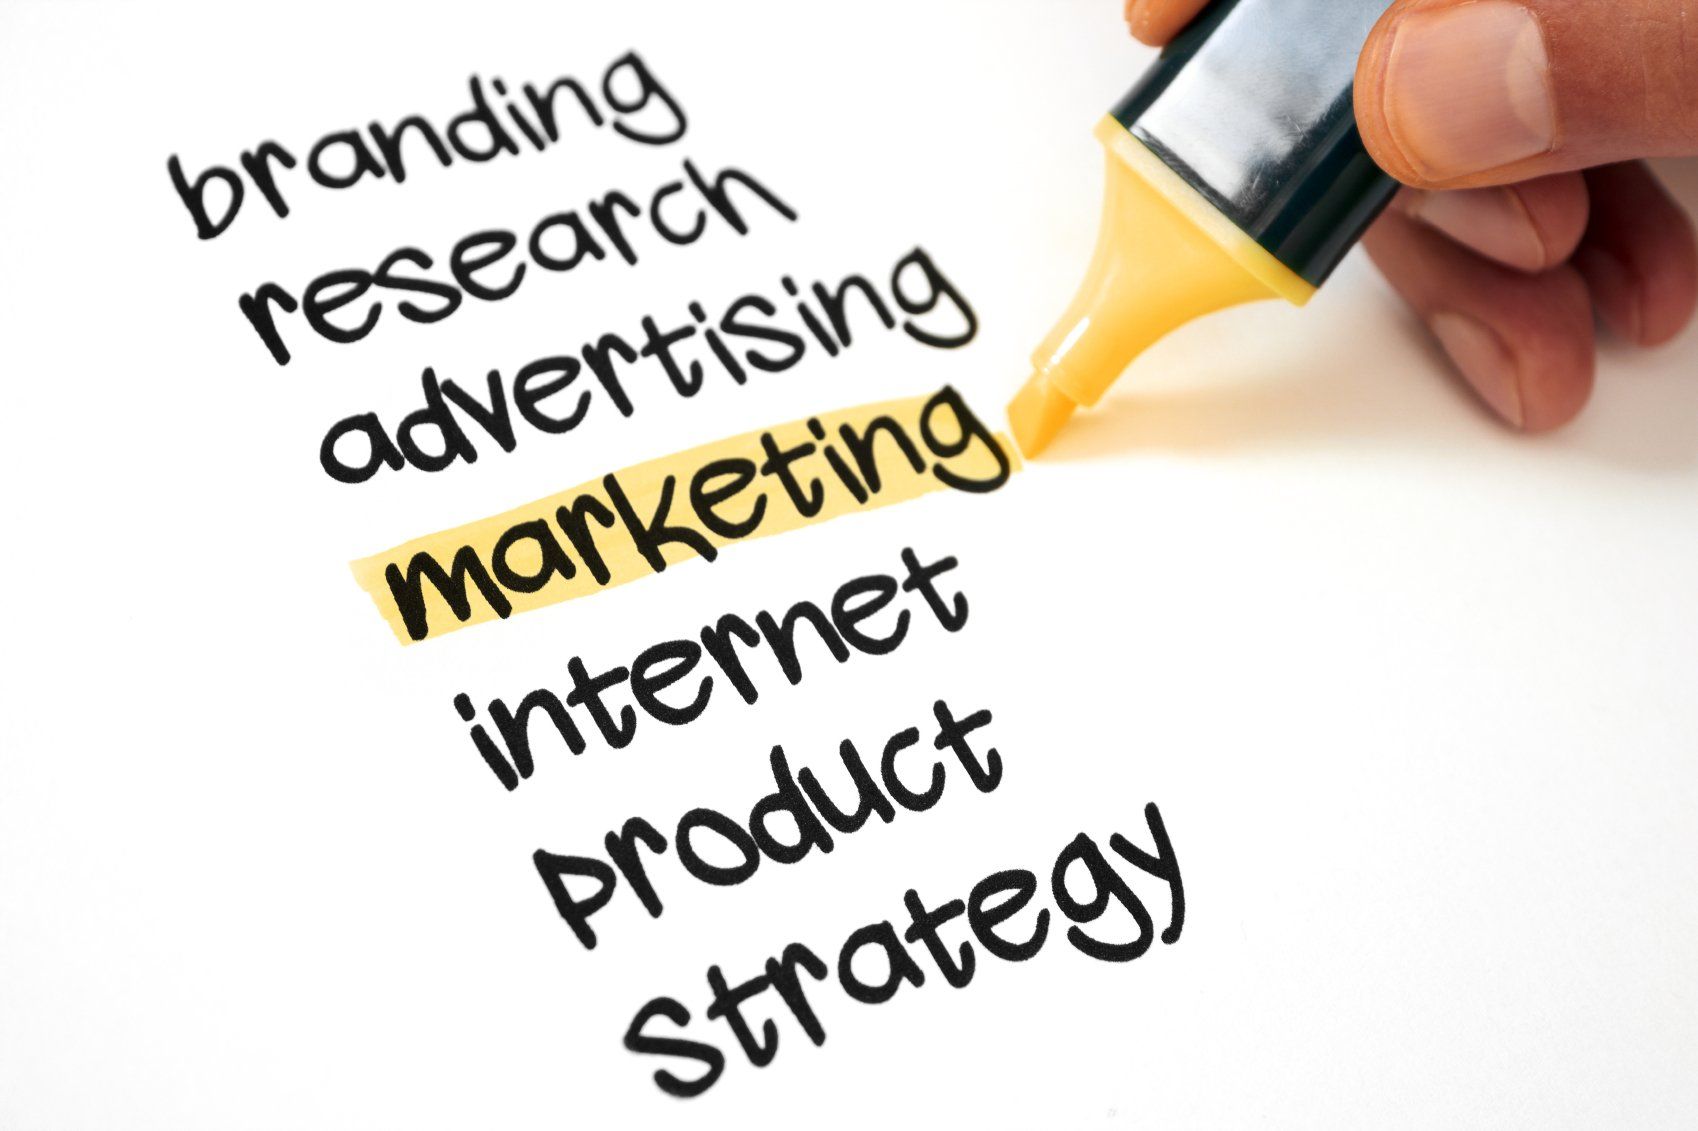 Wörter branding, research, advertising, internet, produkt, strategy und marketing gelb markiert